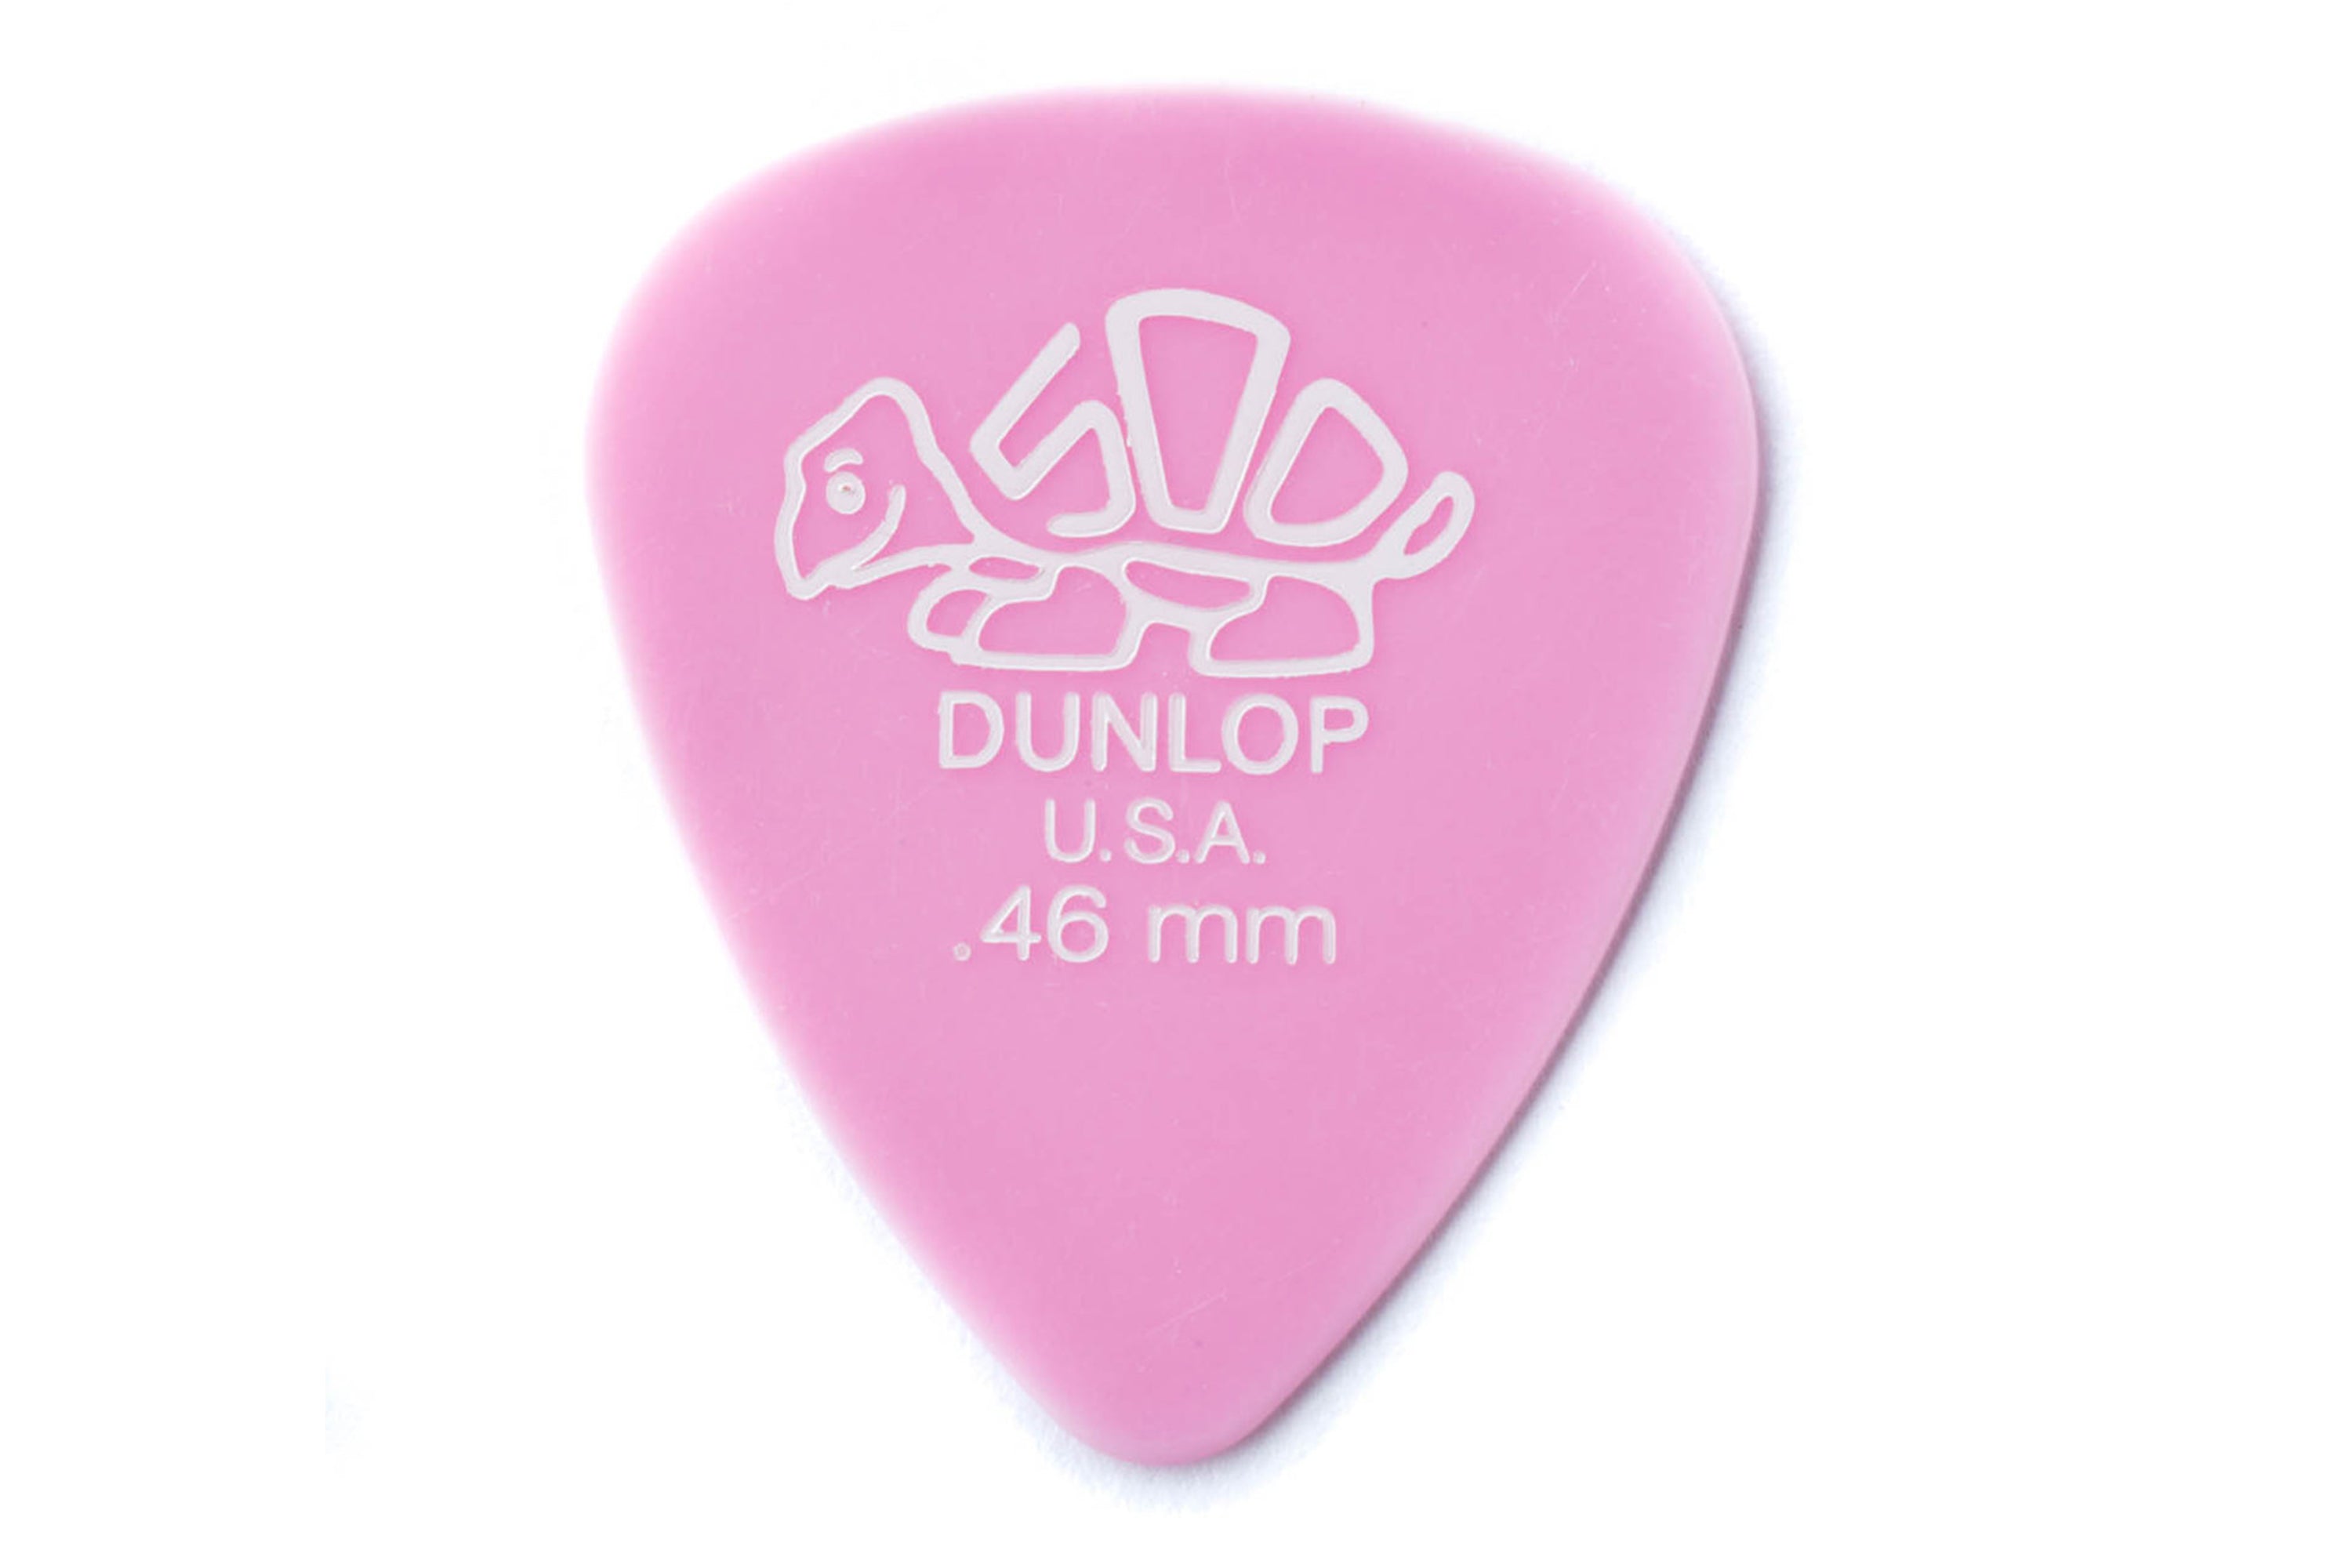 Dunlop Delrin 500 Standard .46mm Pink Guitar & Ukulele Pick - SINGLE PICK